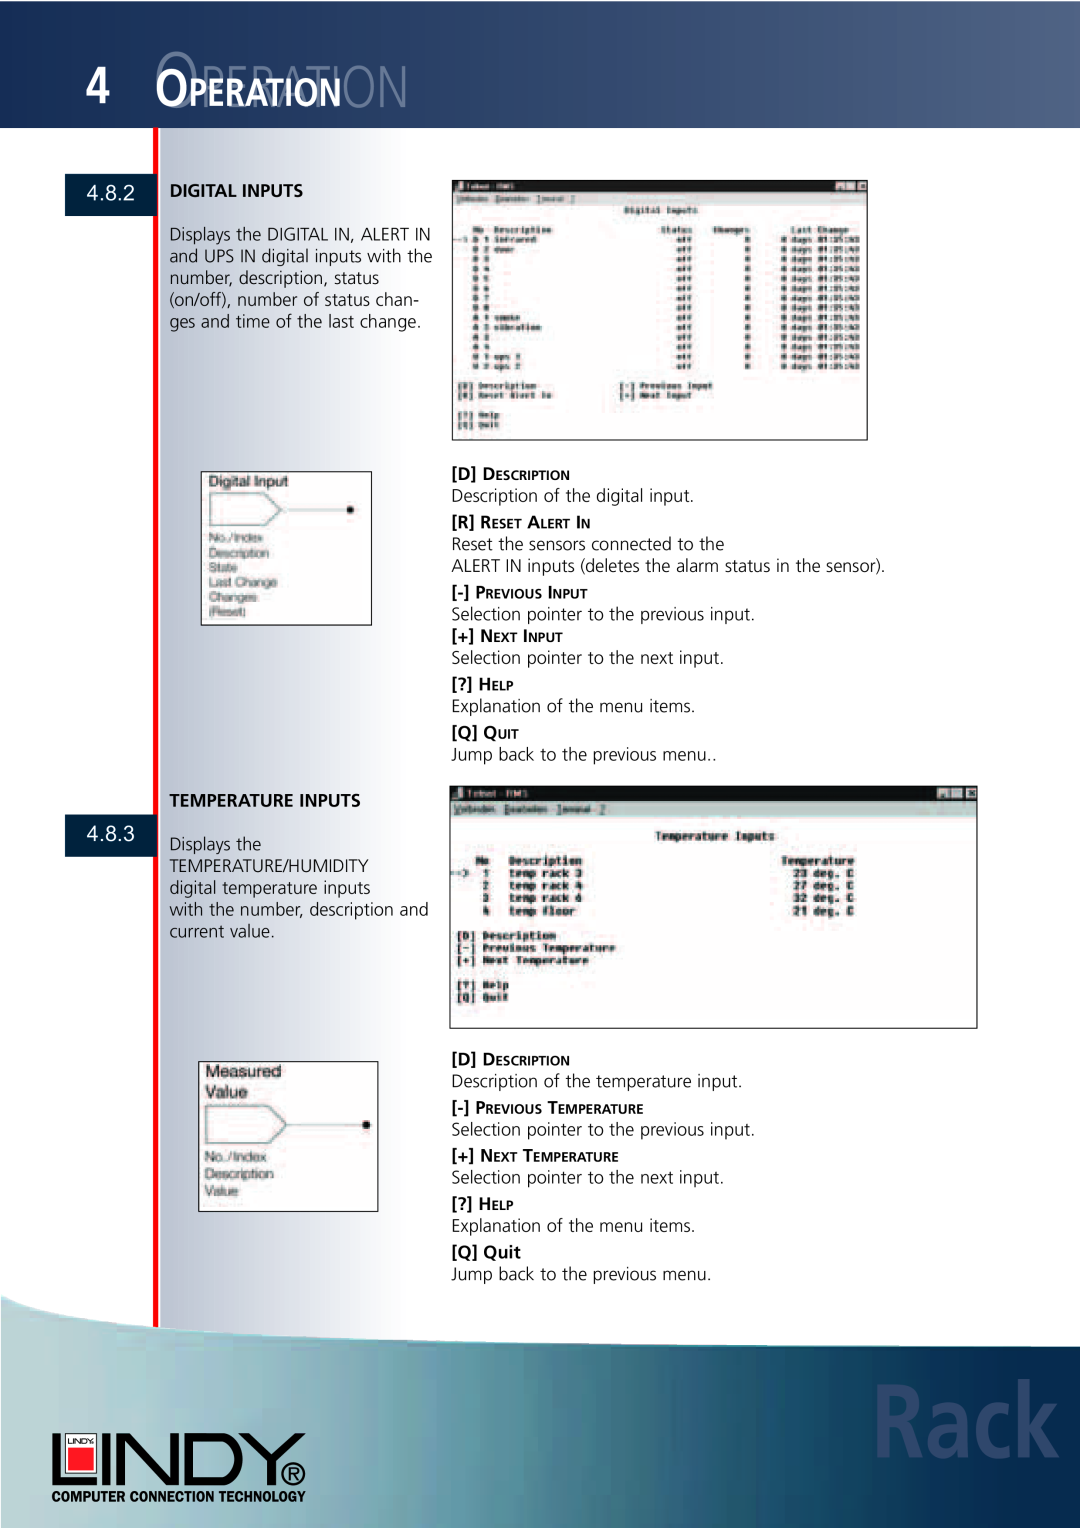 Lindy Carbon Monoxide Alarm user manual 4.8.2 4.8.3, Rack, Ooperationperation, Digital Inputs, Temperature Inputs, Q Quit 